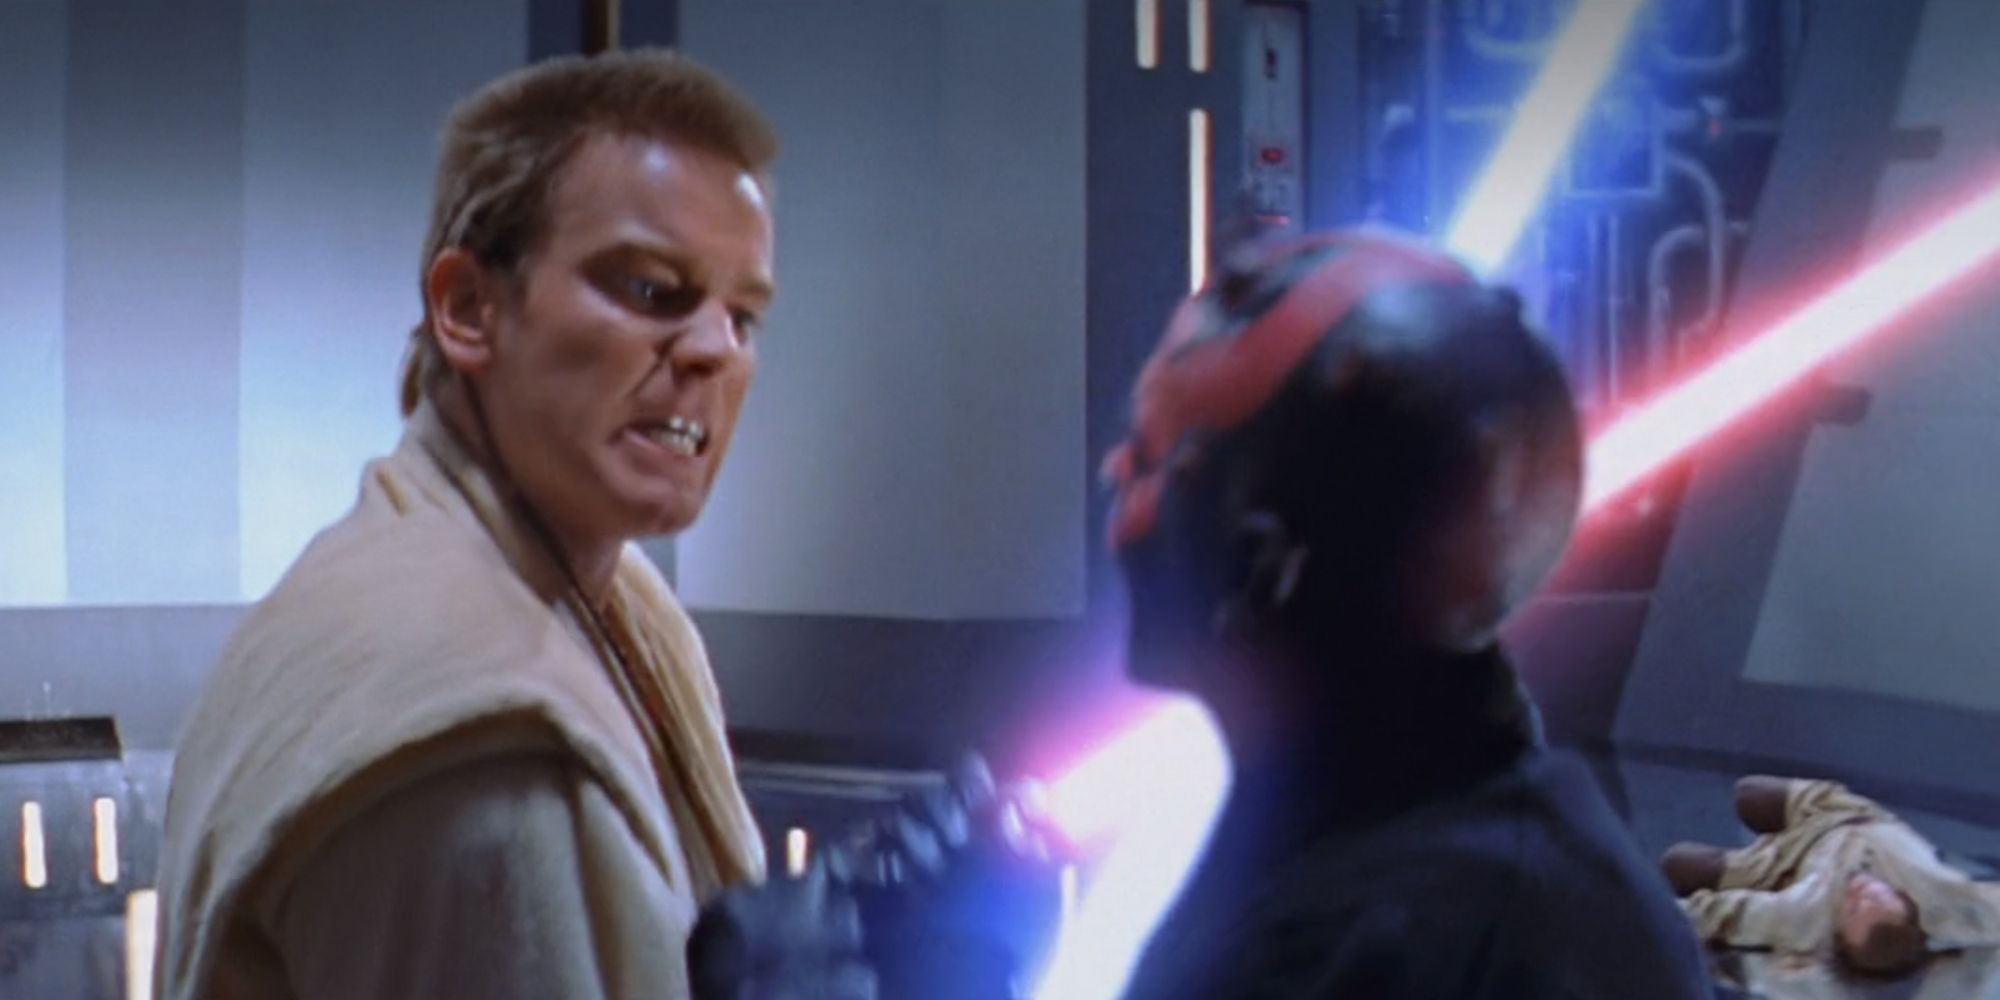 Obi-Wan Kenobi colidindo com sabres de luz em Star Wars The Phantom Menace